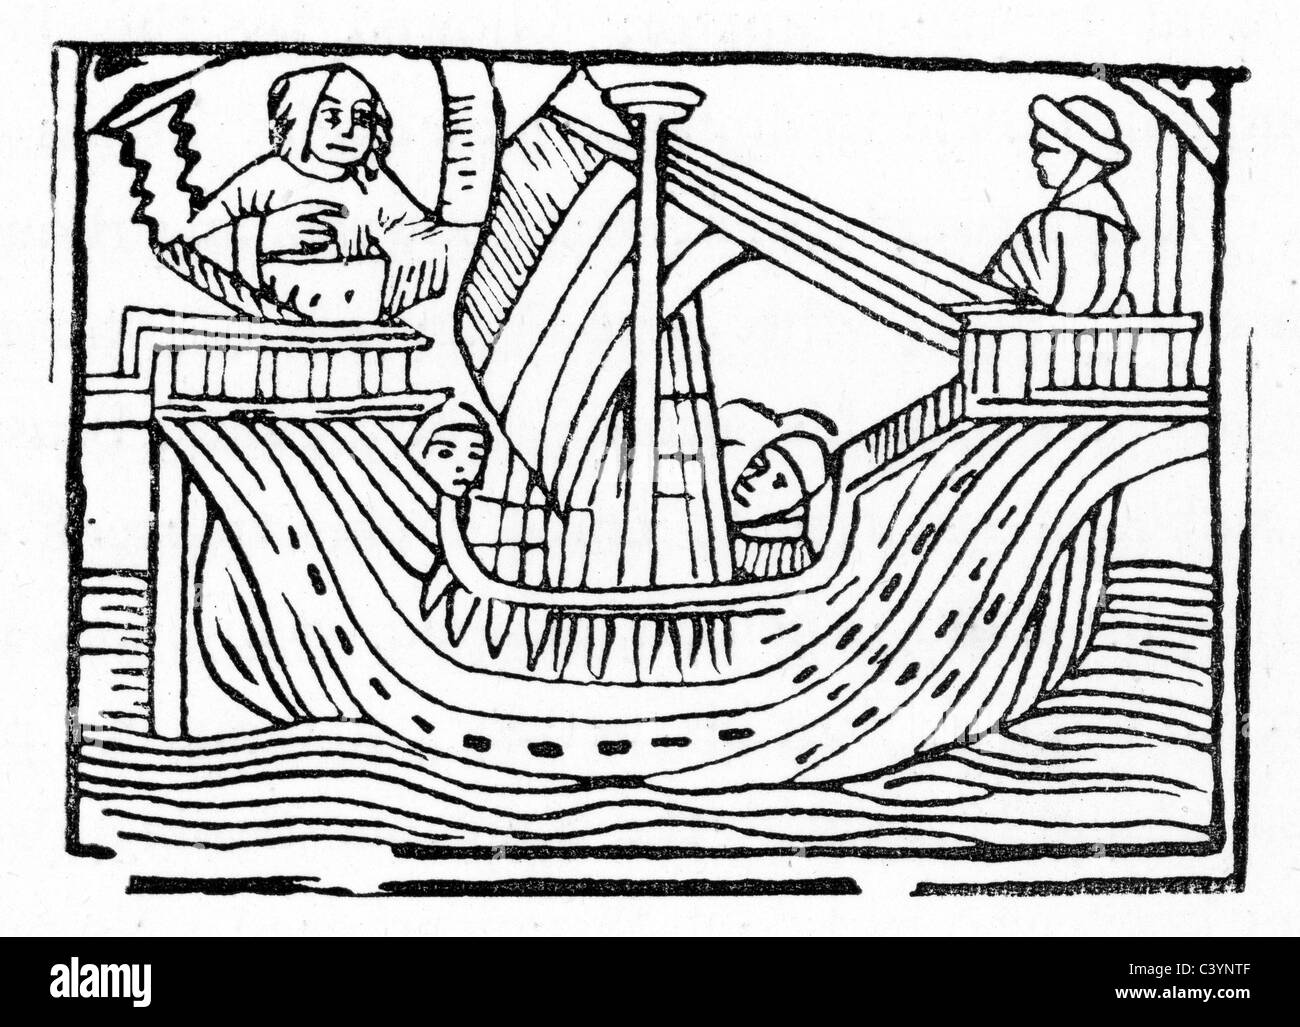 Holzschnitt zeigt Guy of Warwick Segeln für England. Guy of Warwick ist eine legendäre englische Held der Romantik aus dem 13. Jahrhundert. Stockfoto